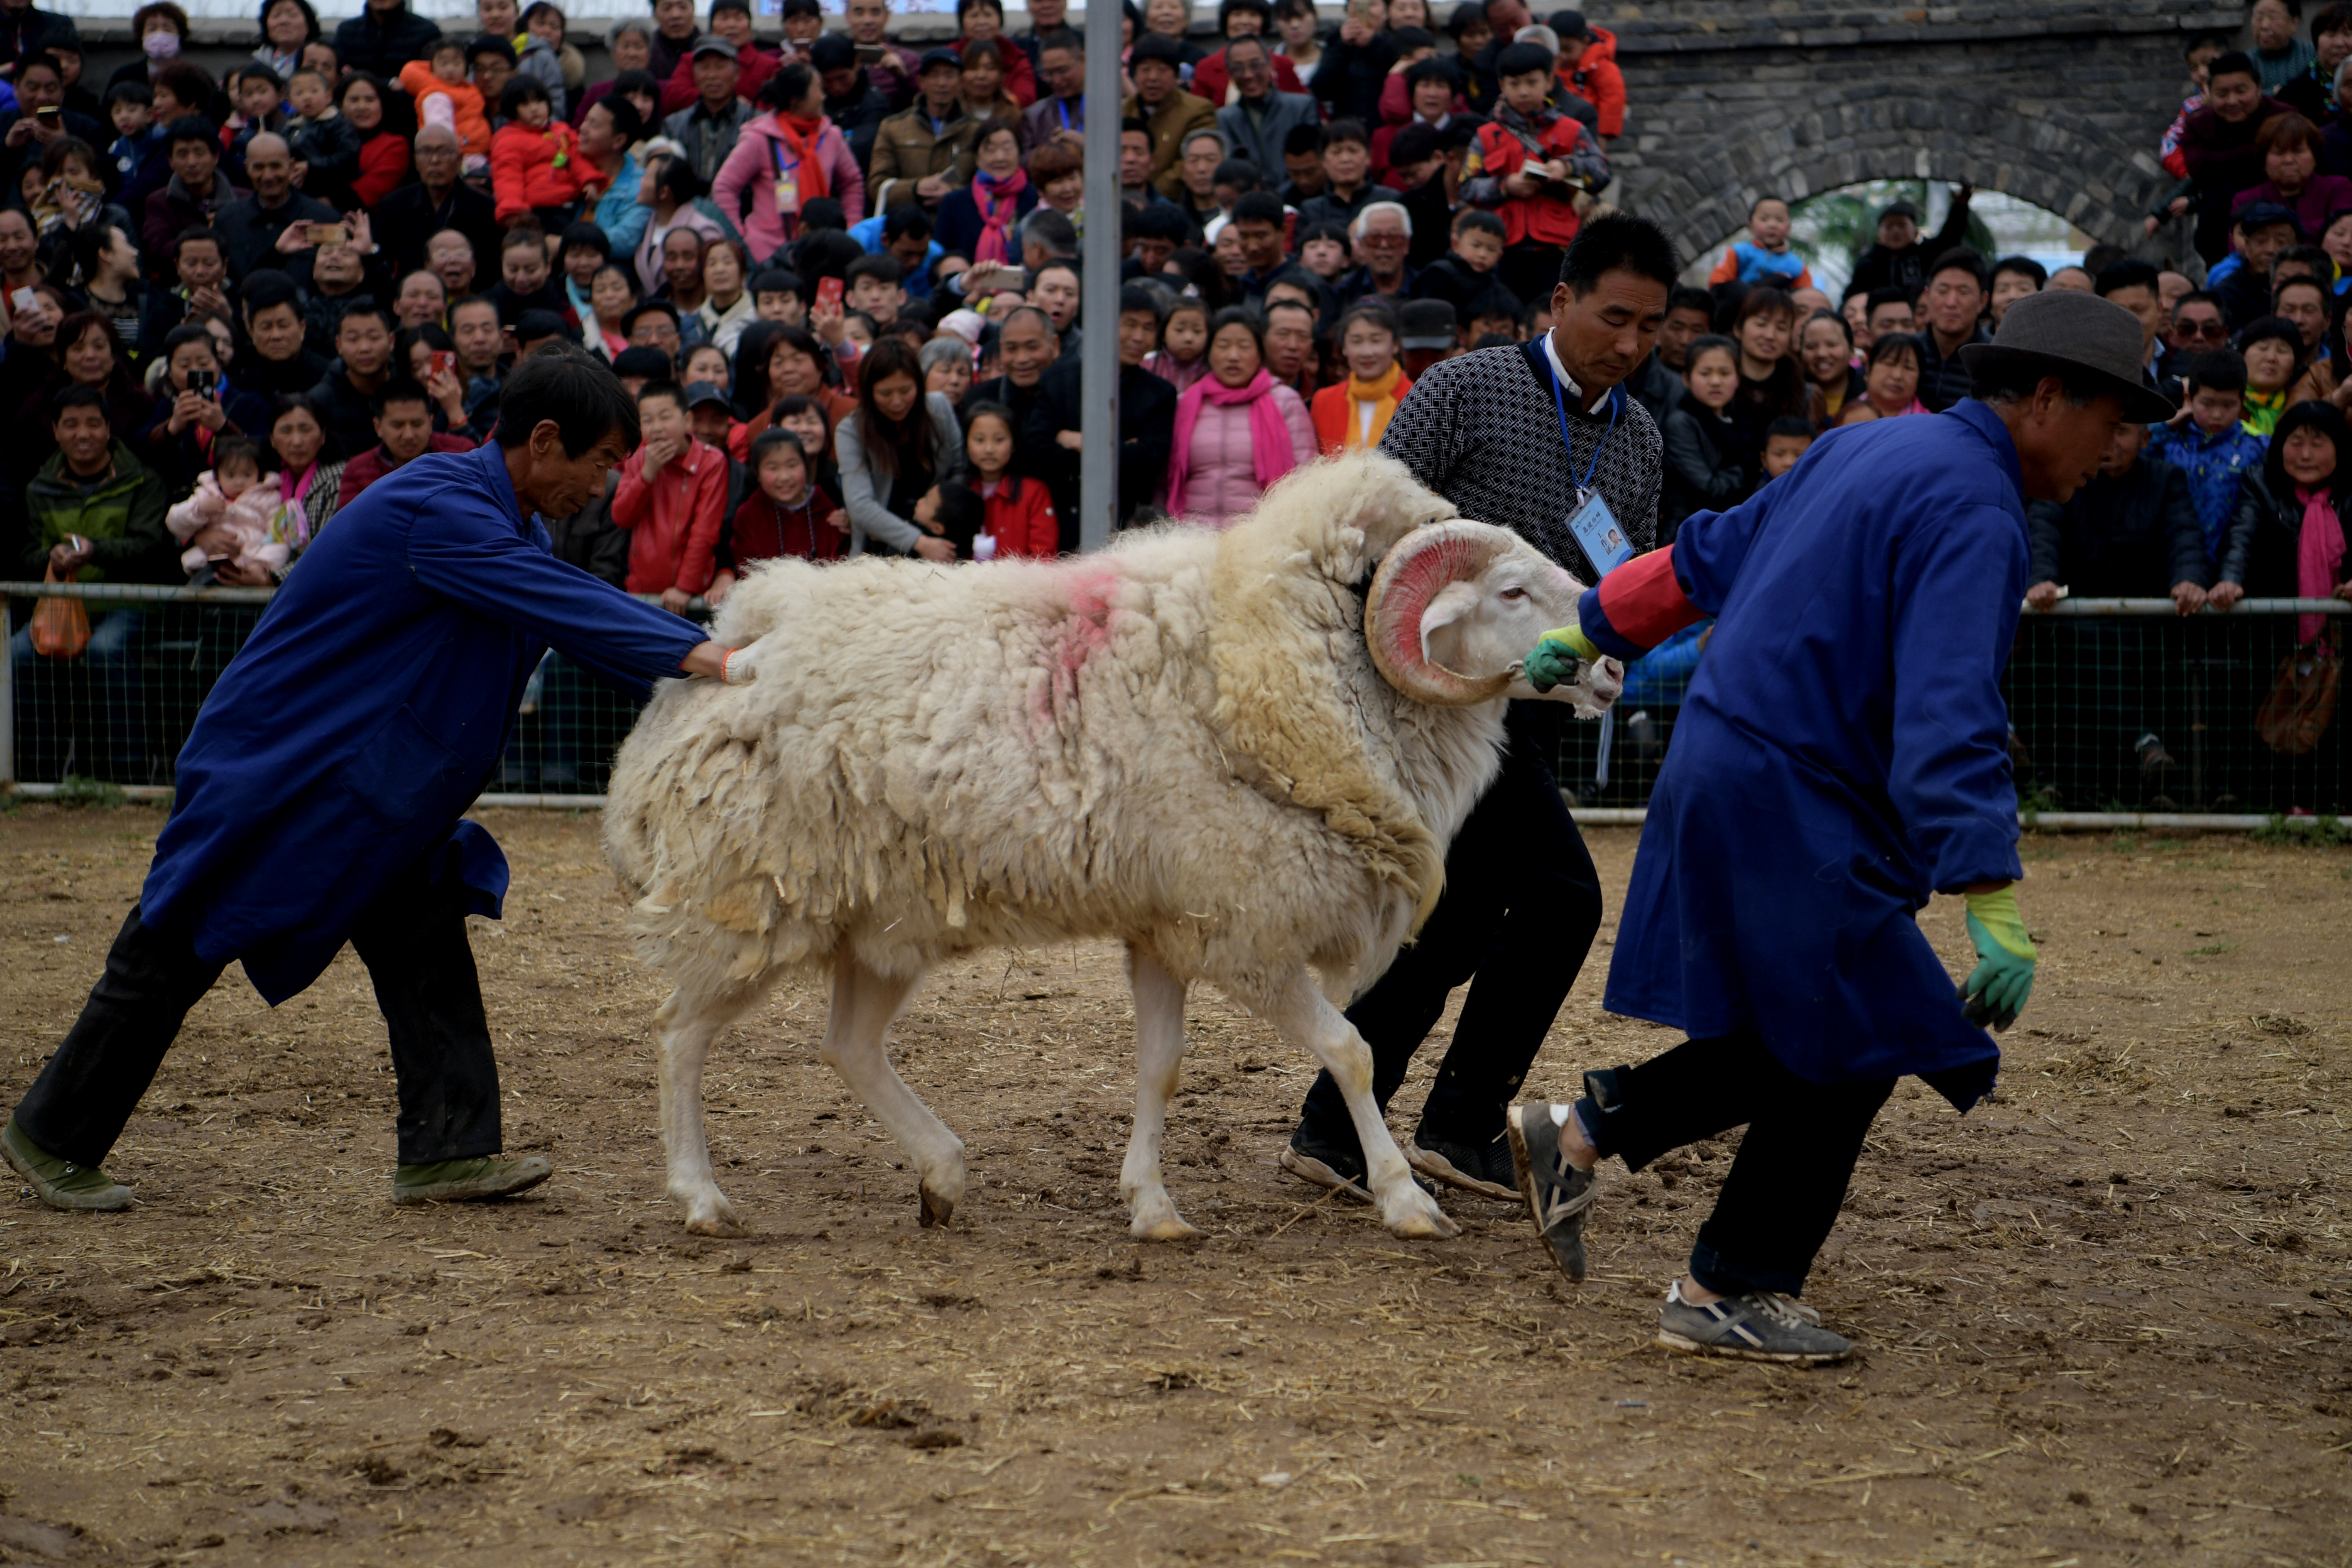 萌羊也凶狠 惊心动魄的斗羊表演引数百人围观